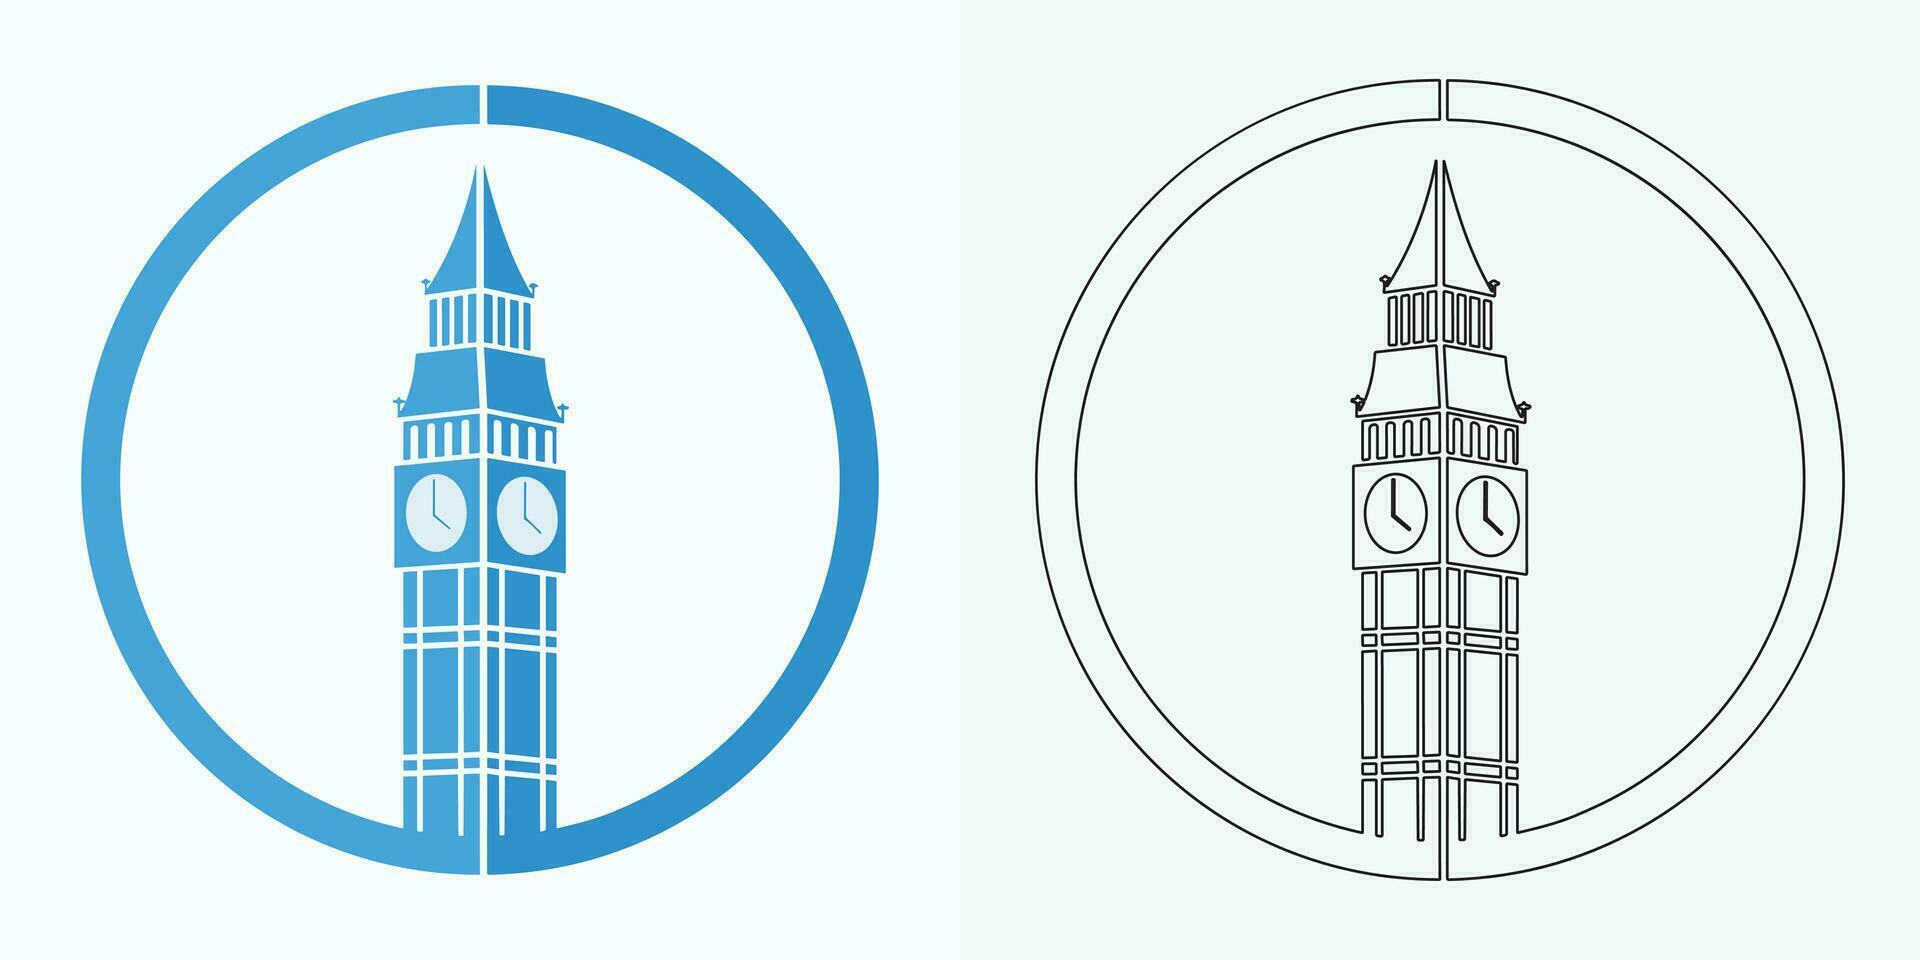 Novo estilo analógico relógio plano vetor ícone. símbolo do Tempo gerenciamento, cronômetro com hora, minuto, e segundo seta. simples ilustração isolado em uma branco fundo.